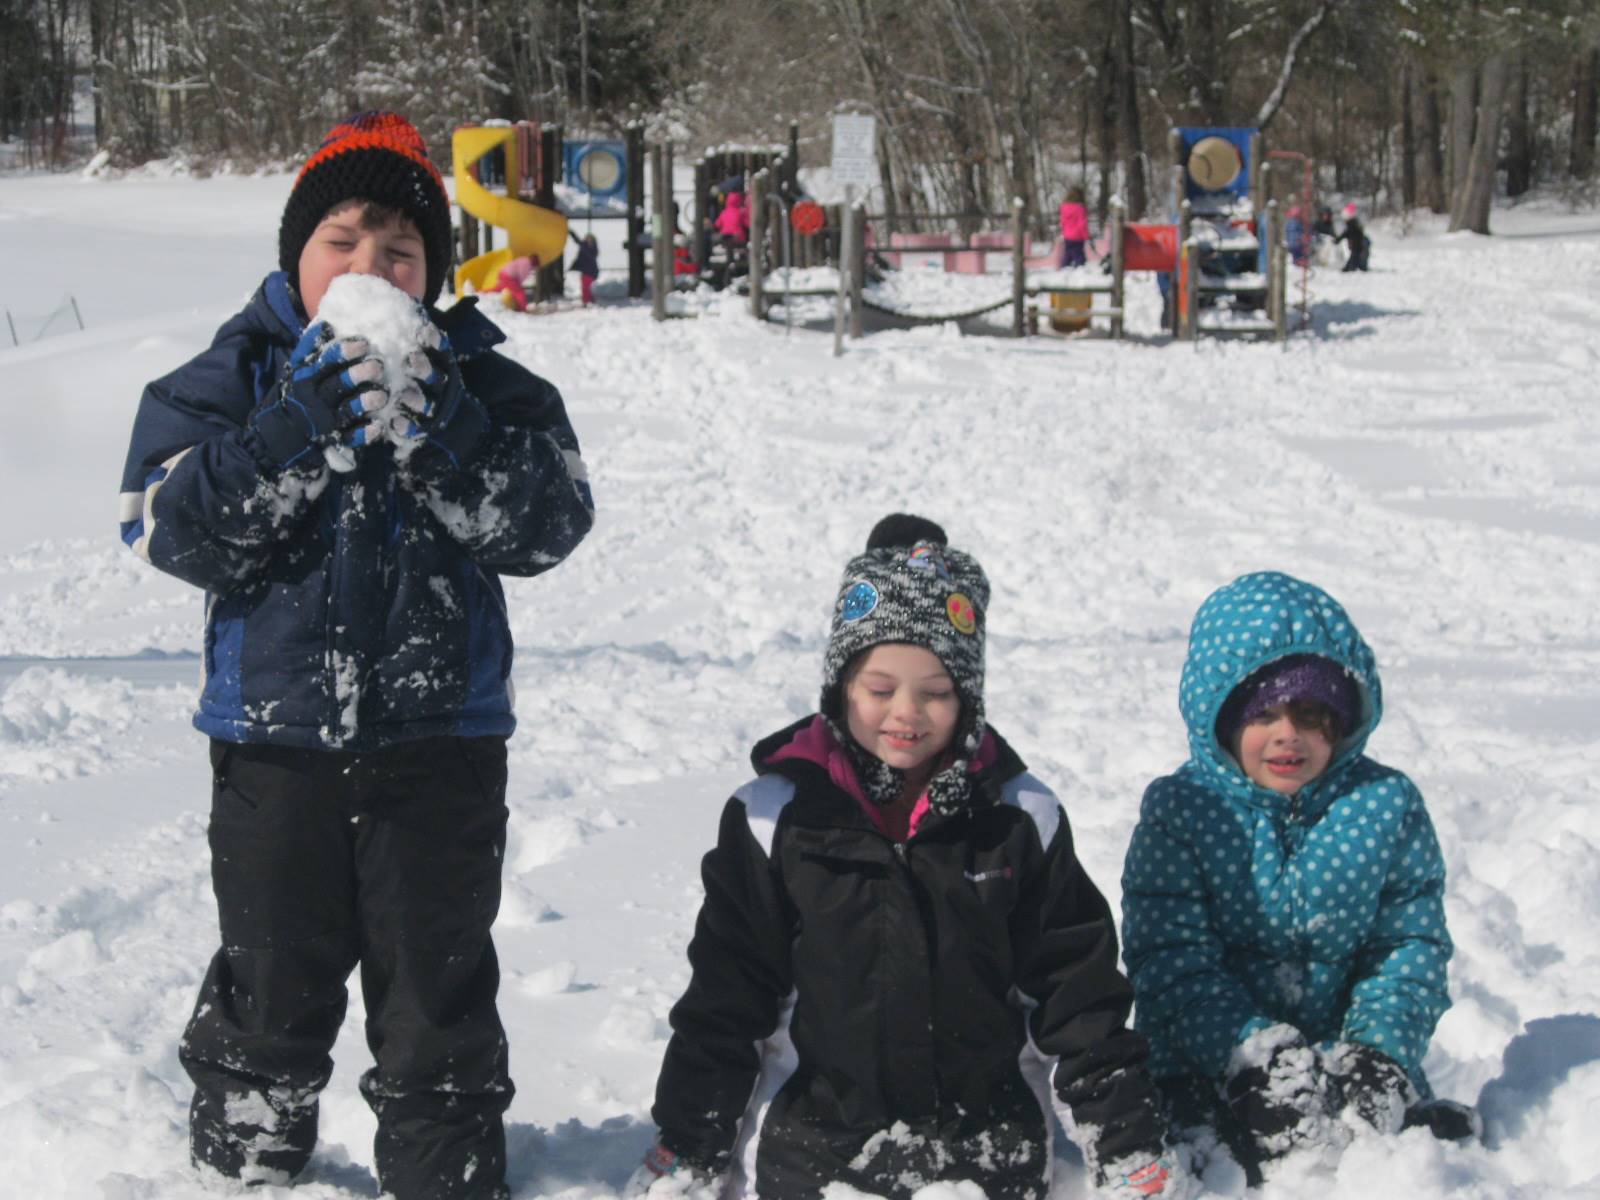 Children sitting in the snow.